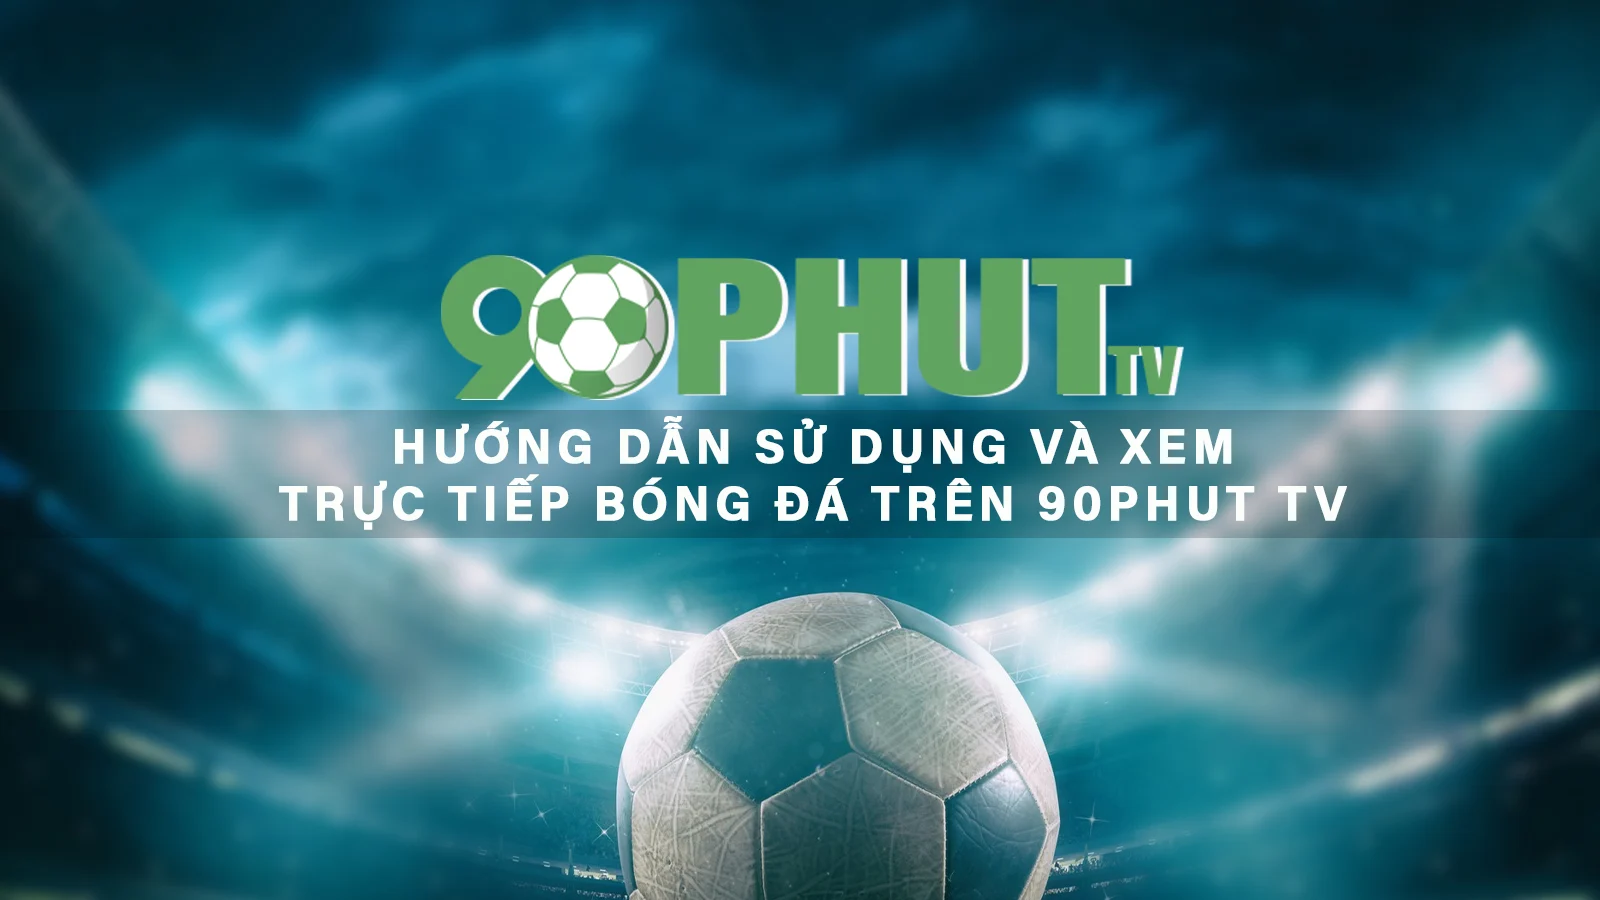 Hướng dẫn sử dụng và xem trực tiếp bóng đá trên 90Phut TV